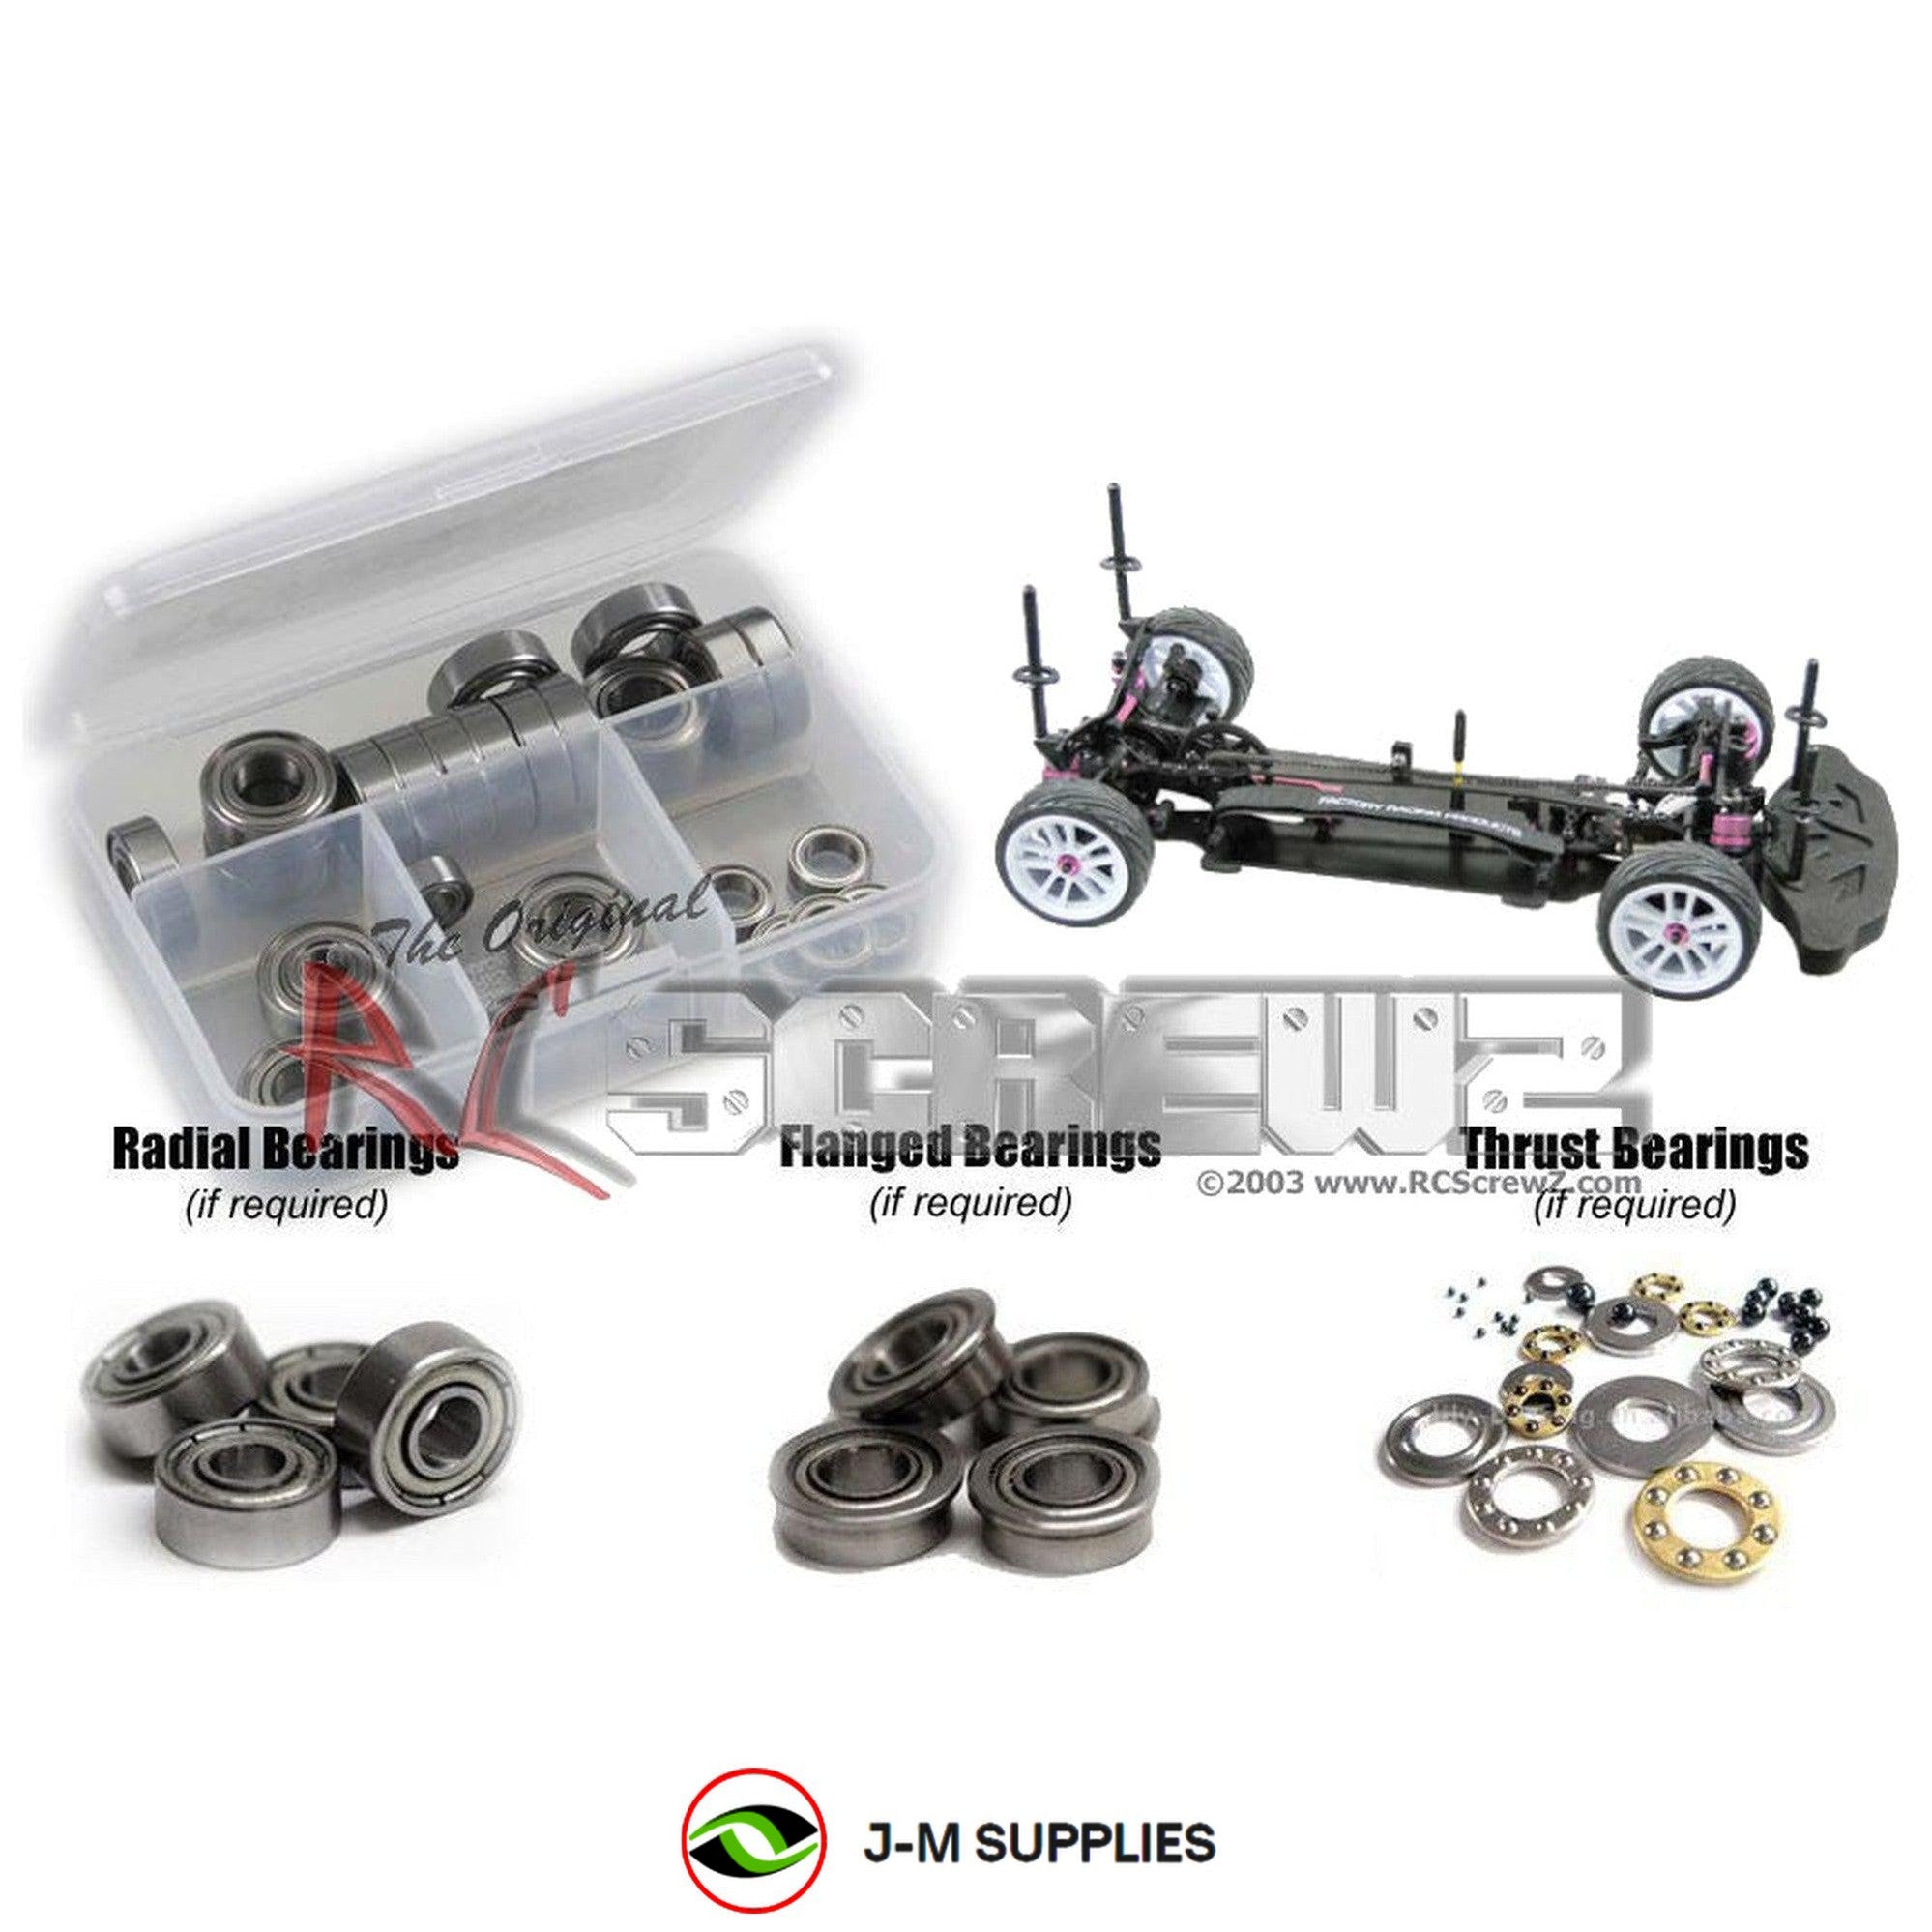 RCScrewZ Metal Shielded Bearings 3rac007b for 3 Racing Sakura Xi/Sport 1/10 Kit - Picture 1 of 12